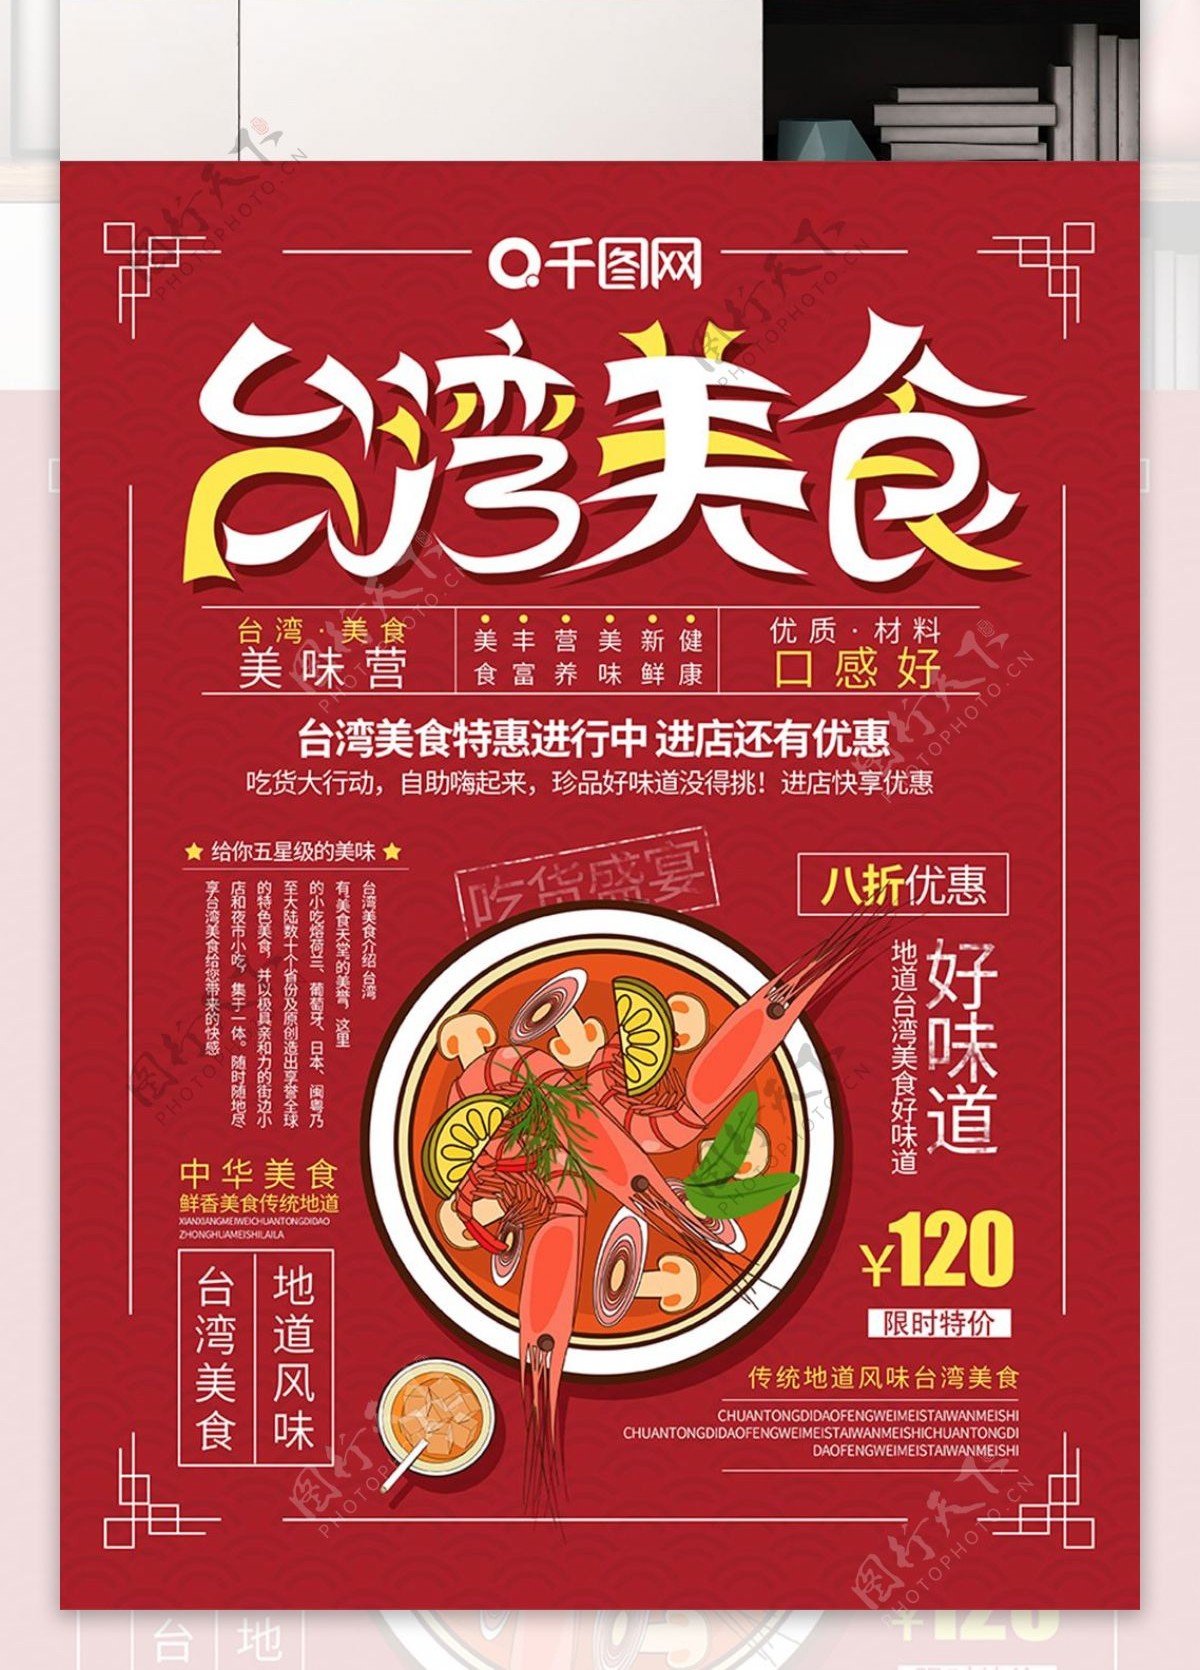 红色大气简约台湾美食海报